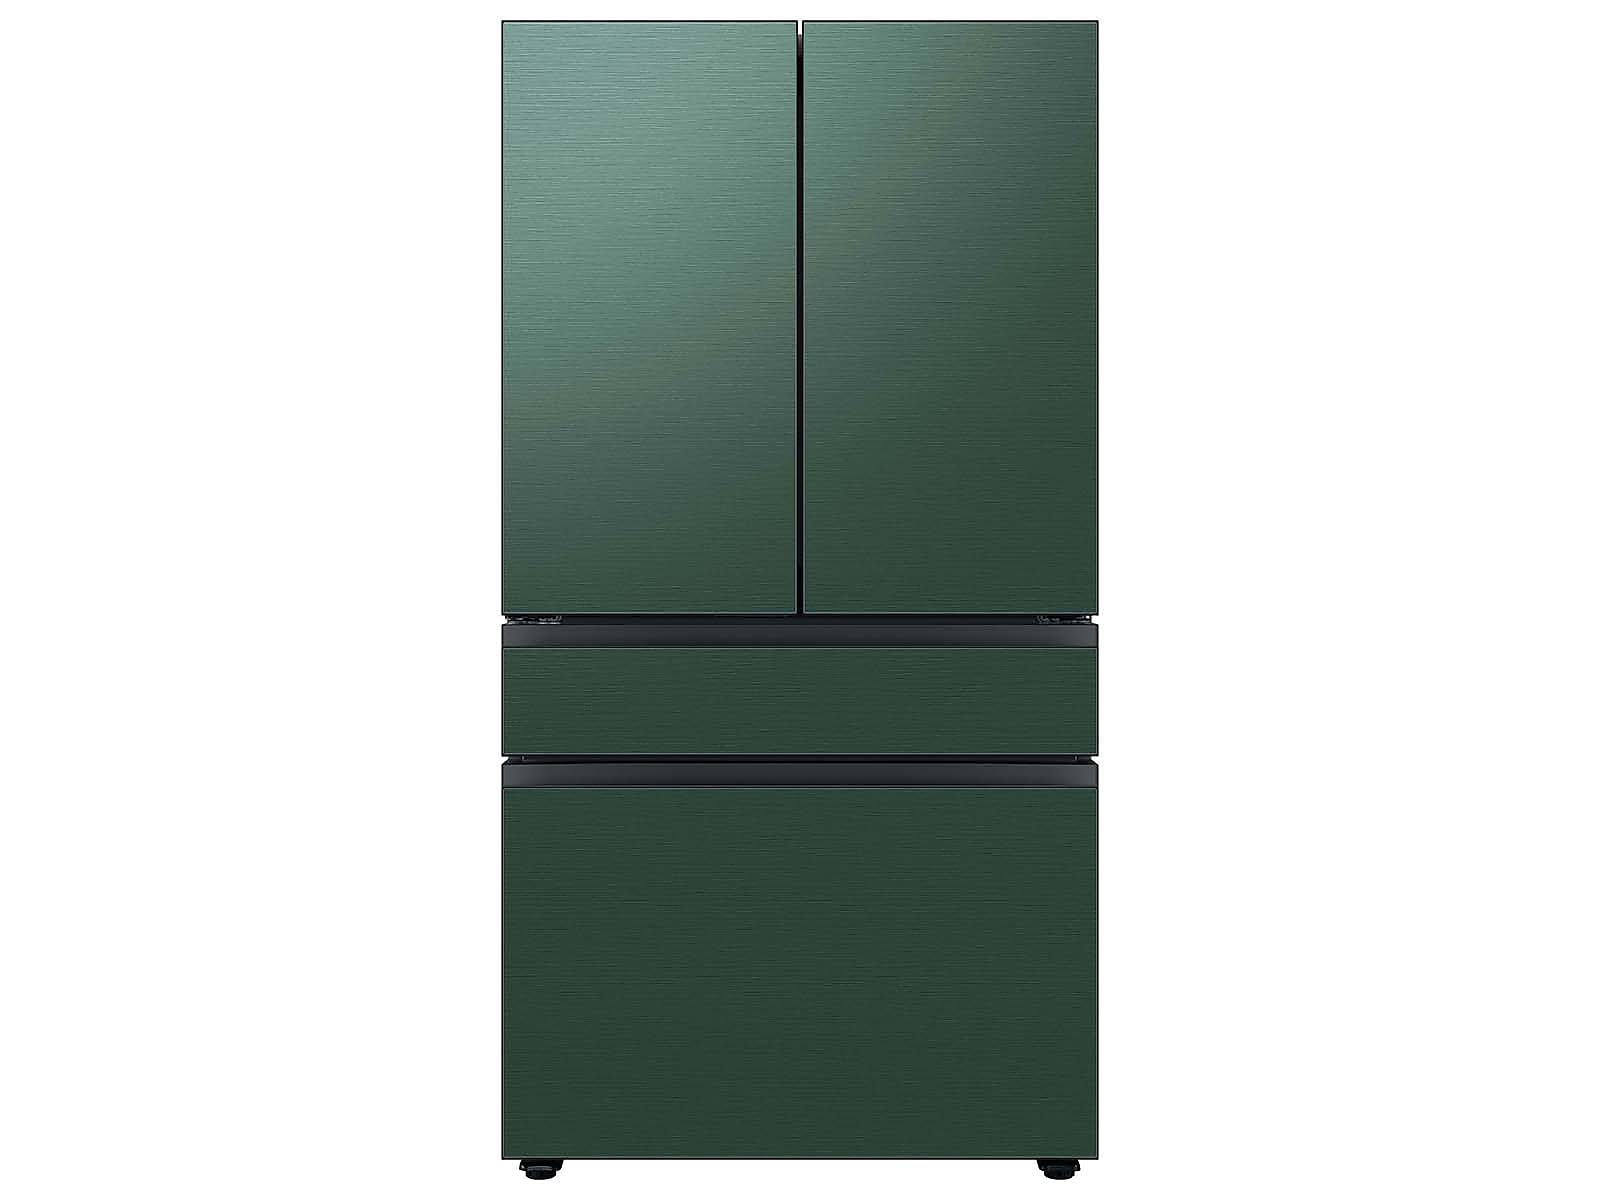 Samsung Bespoke 4-Door French Door Refrigerator in White Glass (23 cu. ft.) with Customizable Door Panel Colors and Beverage Center™ in Emerald Green Steel